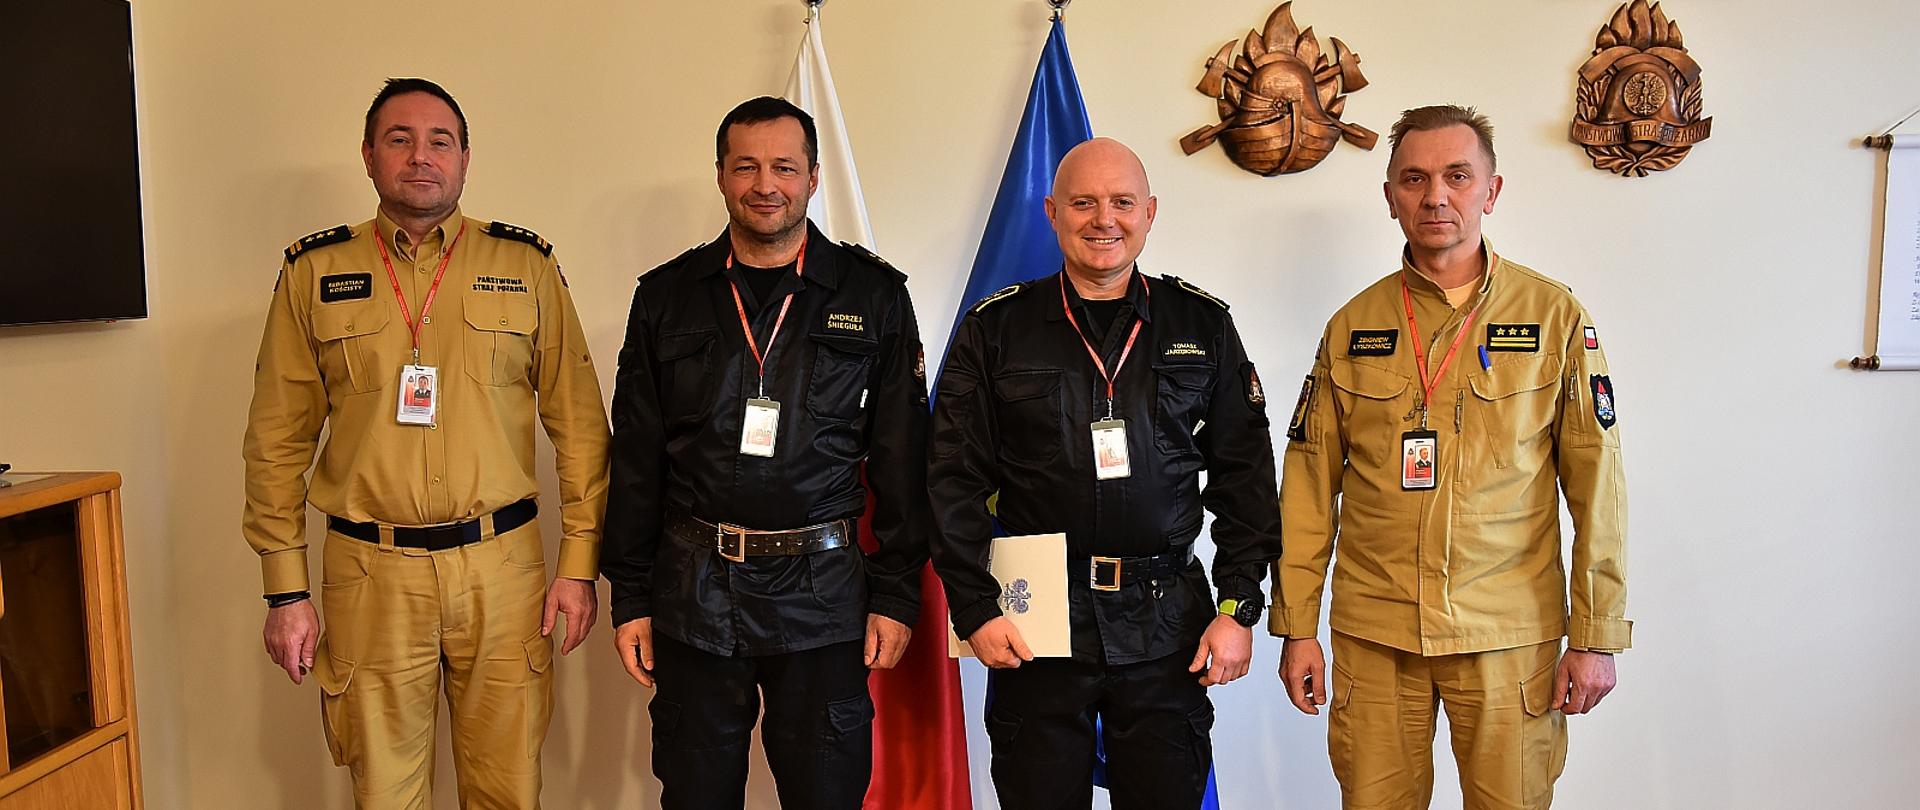 na zdjęciu czterech strażaków w pozujących do zdjęcia na tle ściany za nimi stoją flaga polski i unii europejskiej , strażacy stojący wewnątrz ubrani są w mundurach dowódczo sztabowych dwóch na zewnątrz w mundurach służbowych w kolorze piaskowym